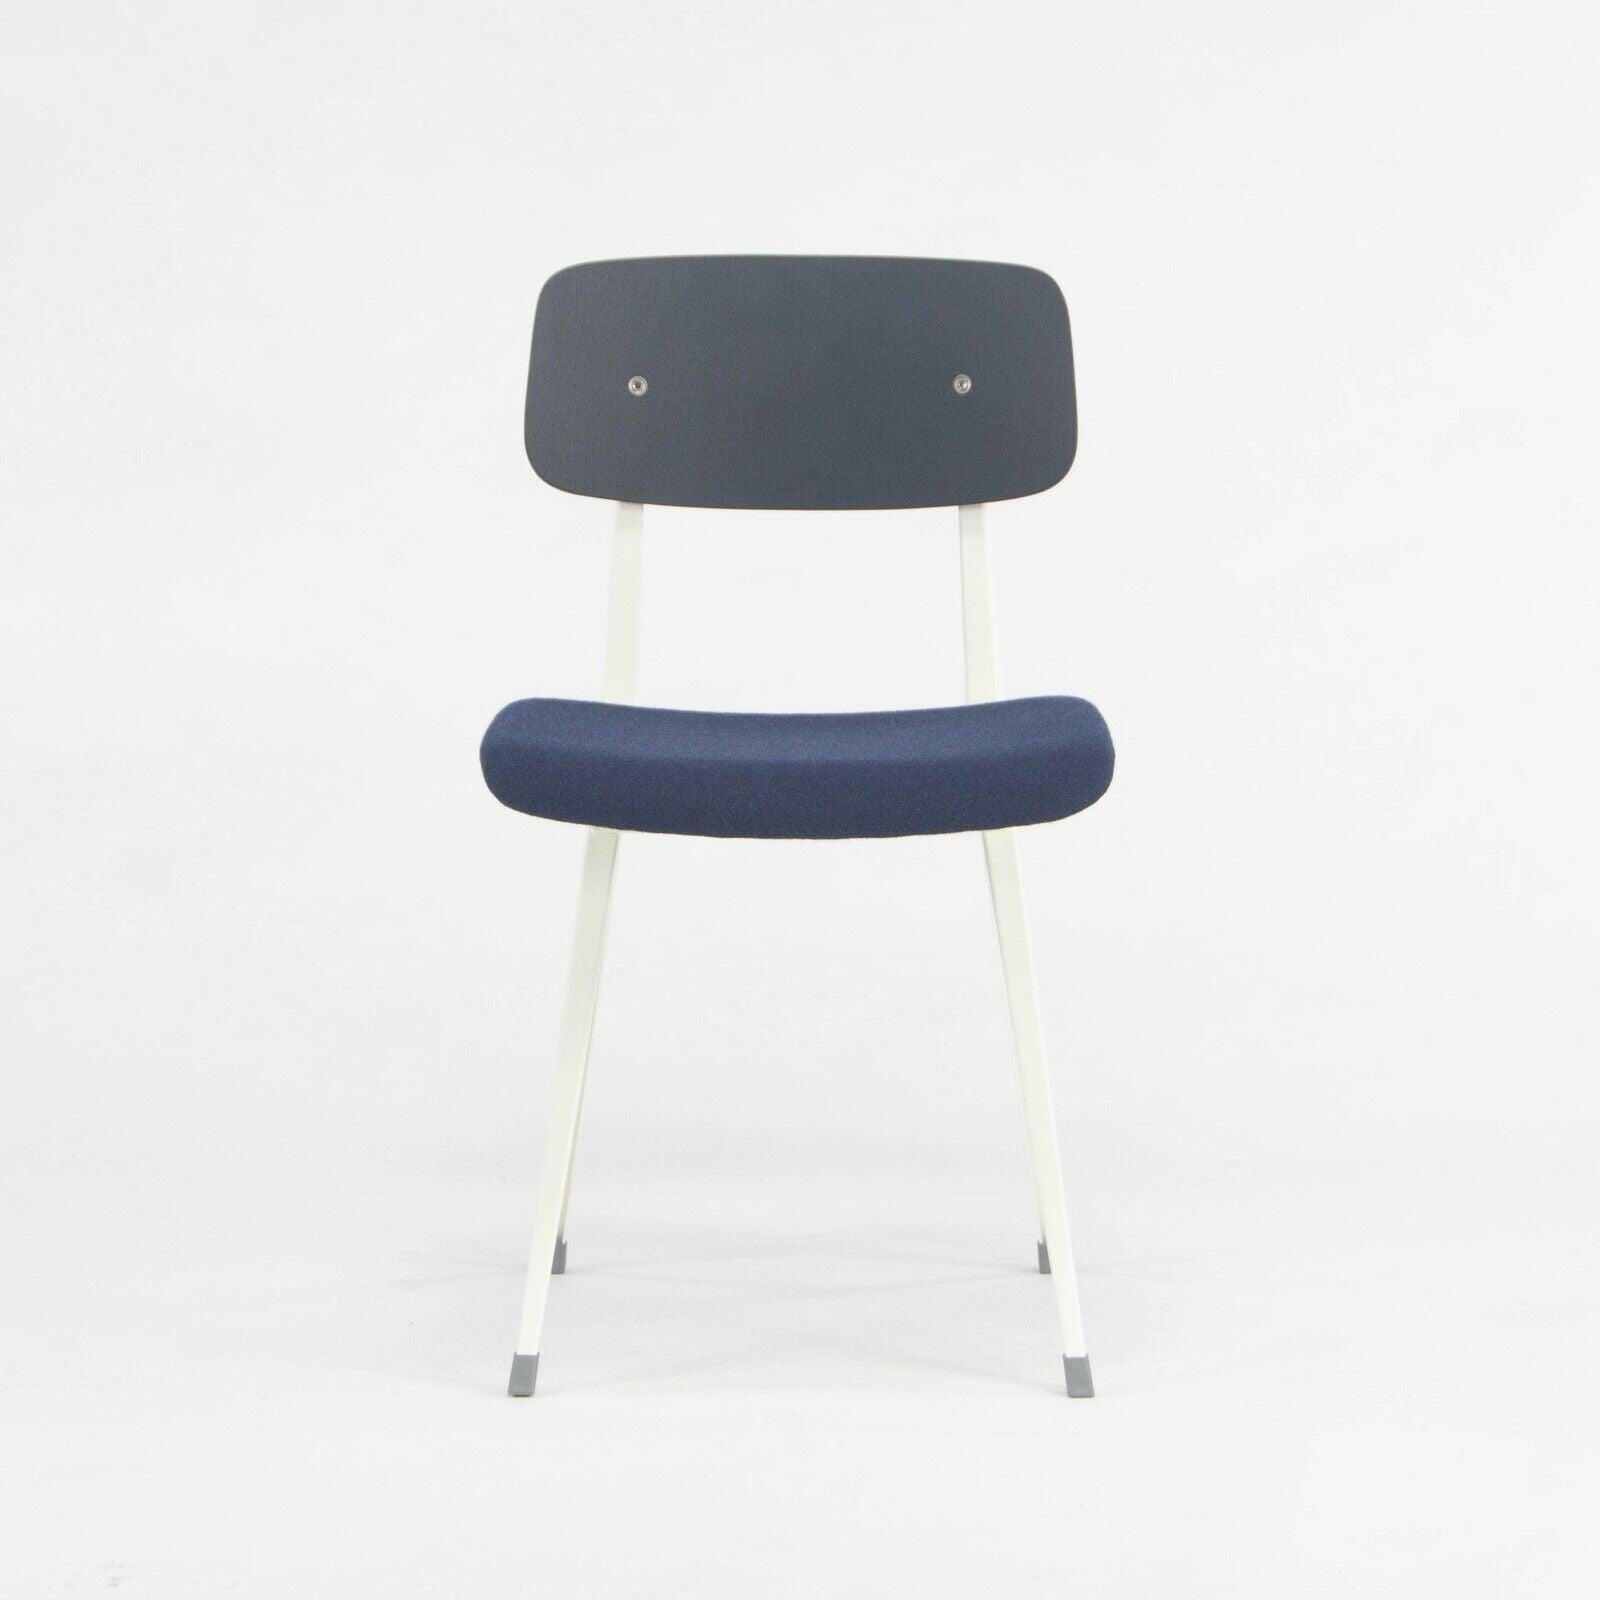 Zum Verkauf steht ein Satz von zwei gepolsterten Result Side Chairs, entworfen von Frisco Kramer und Wim Rietveld und hergestellt von HAY. Diese Stühle wurden aus weiß pulverbeschichtetem Stahl mit einer schwarz gebeizten Eichenrückenlehne und